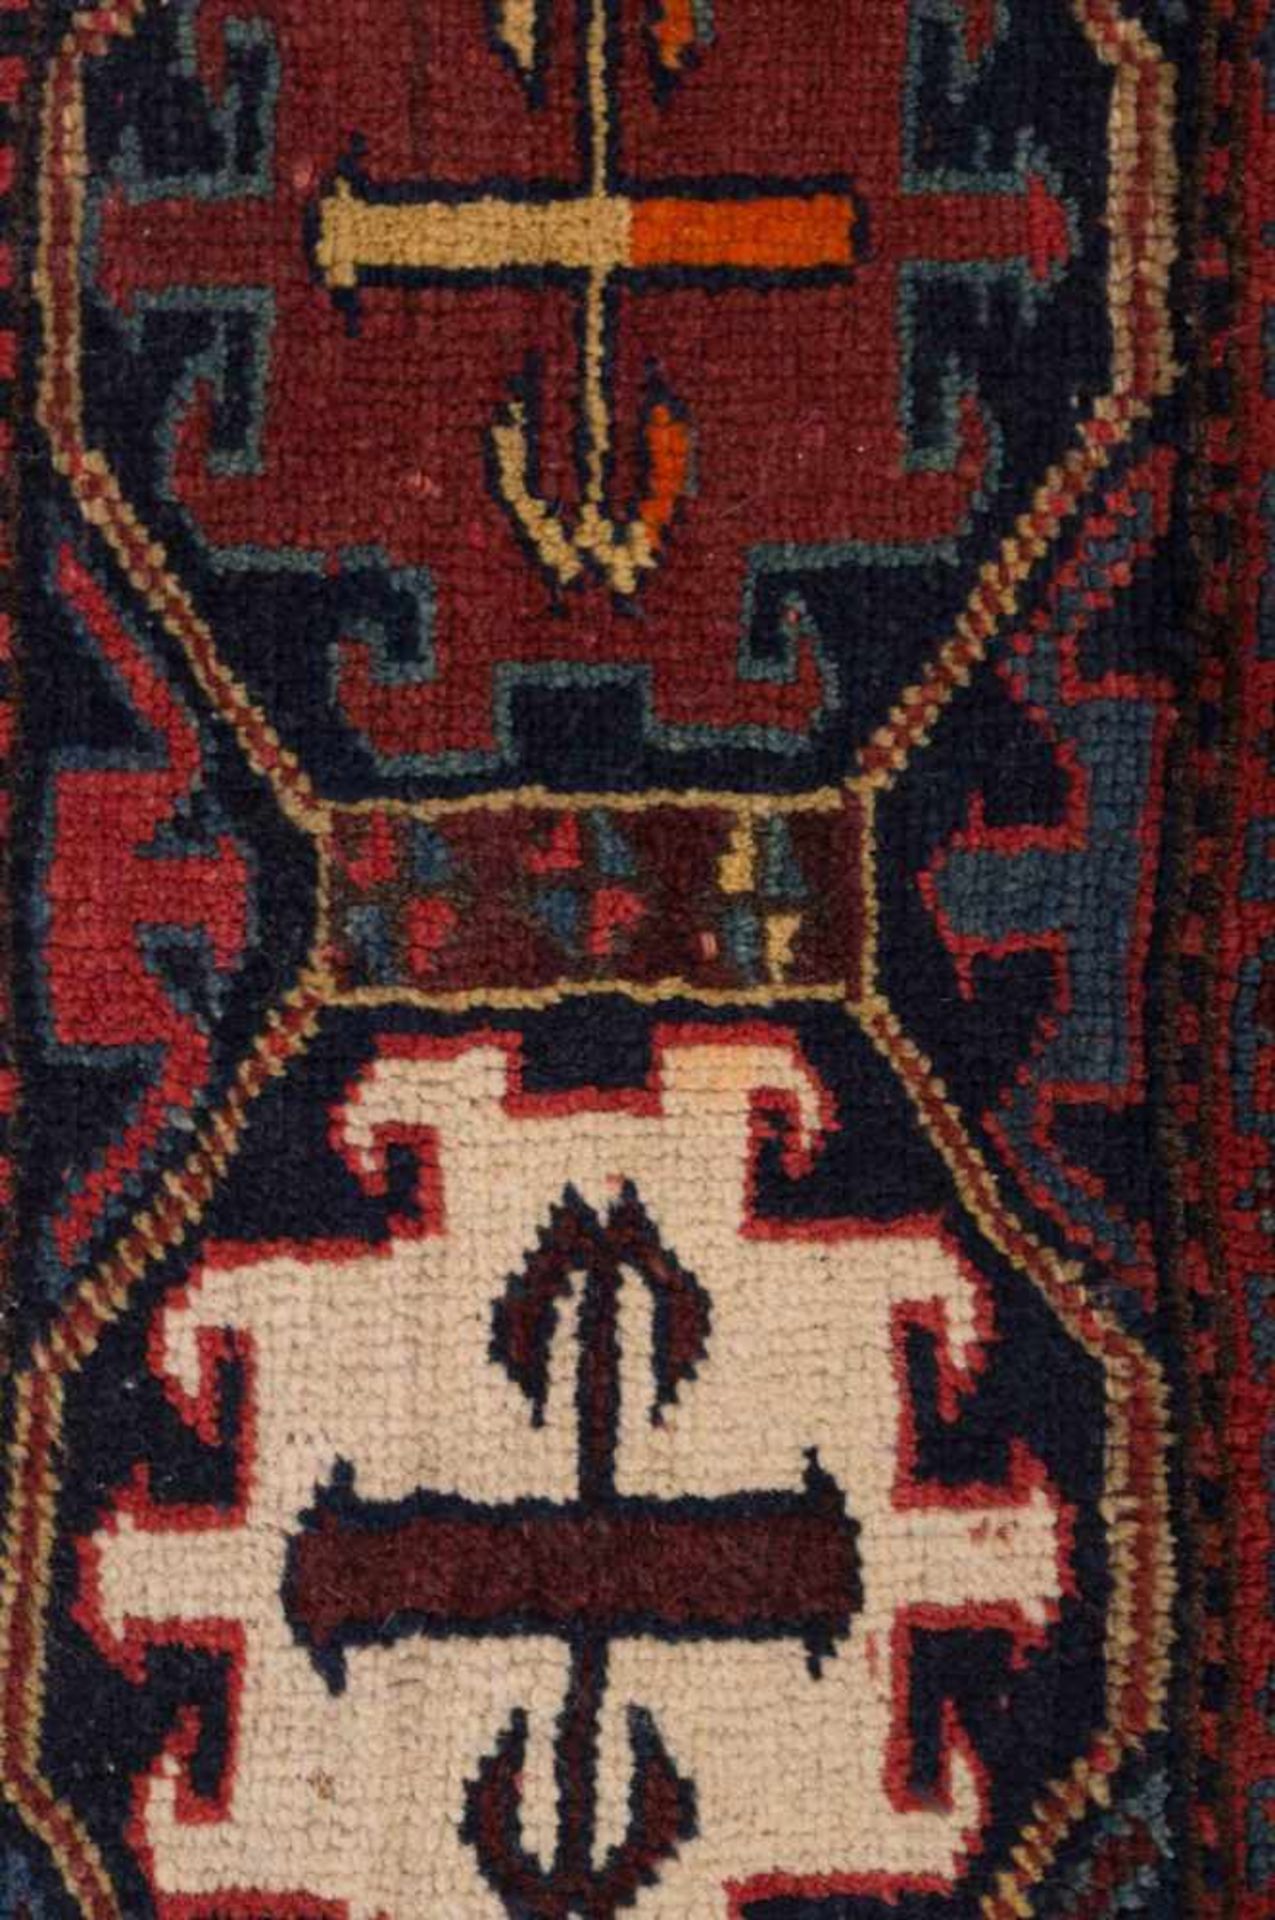 altes Orientalisches Teppichfragmenthandgeknüpft, Maße: 91 cm x 44 cm,small old oriental - Image 2 of 3